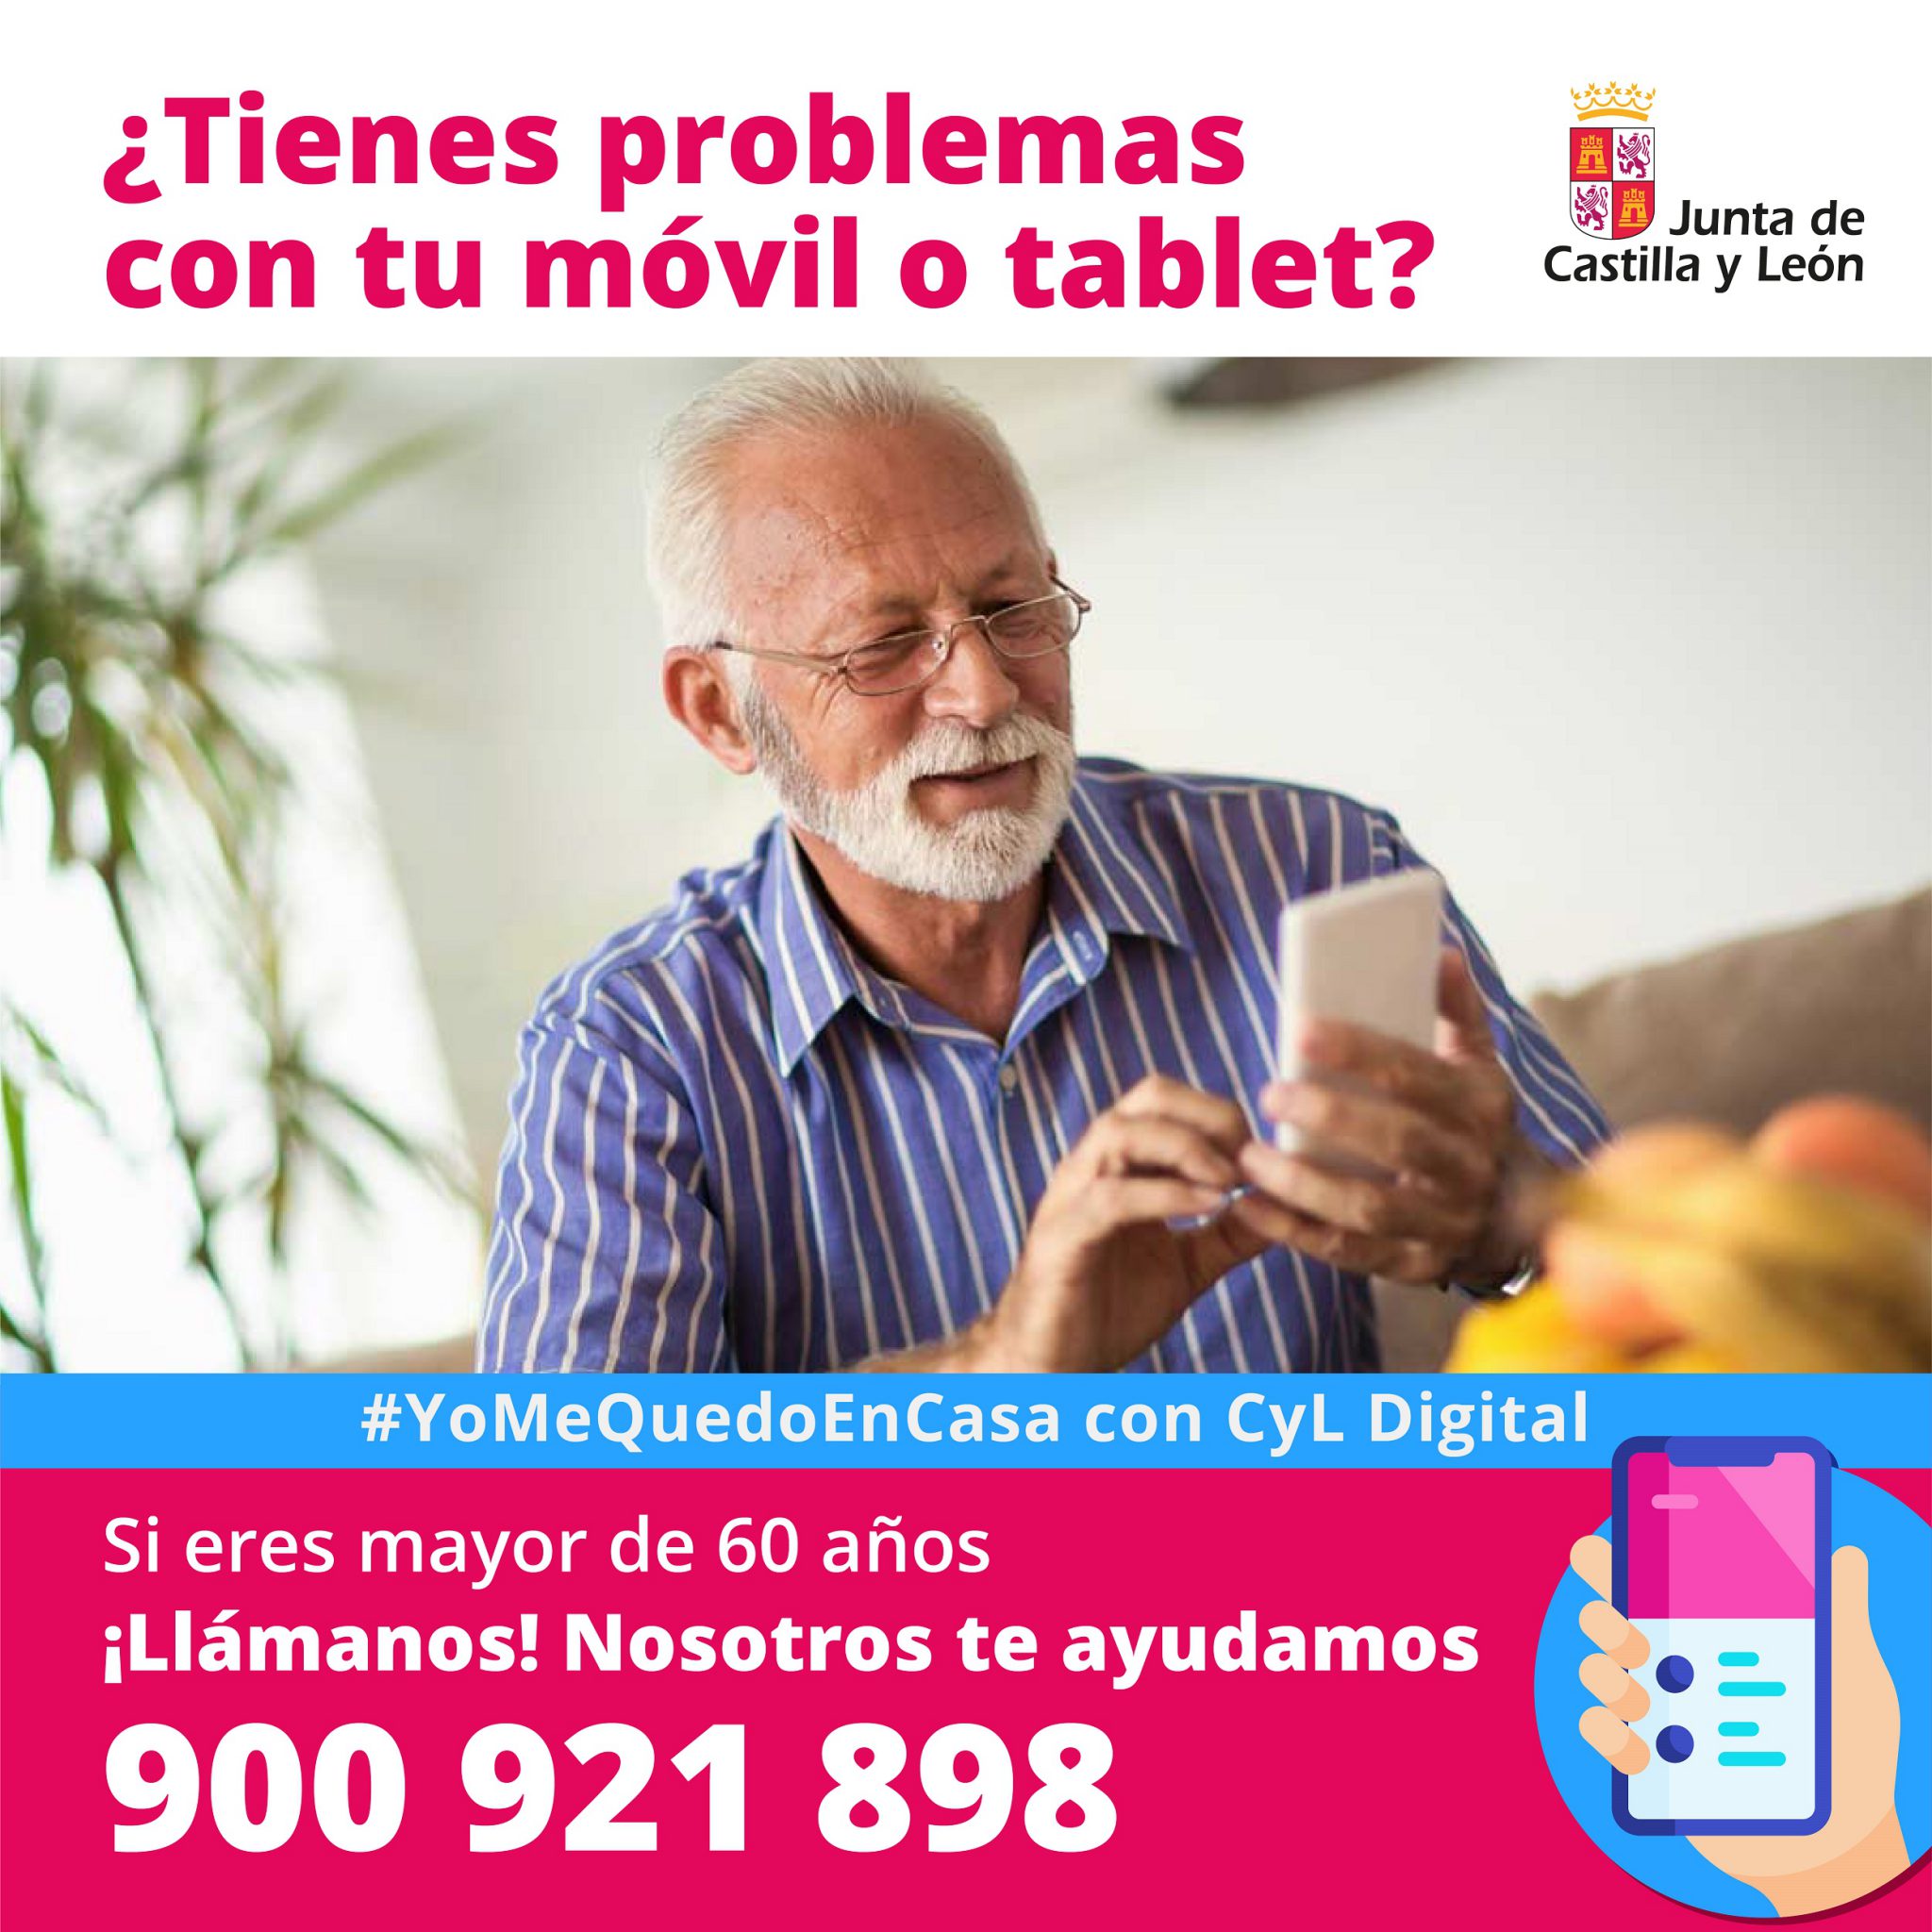 Servicio de asistencia telefónica para personas mayores de 60 años